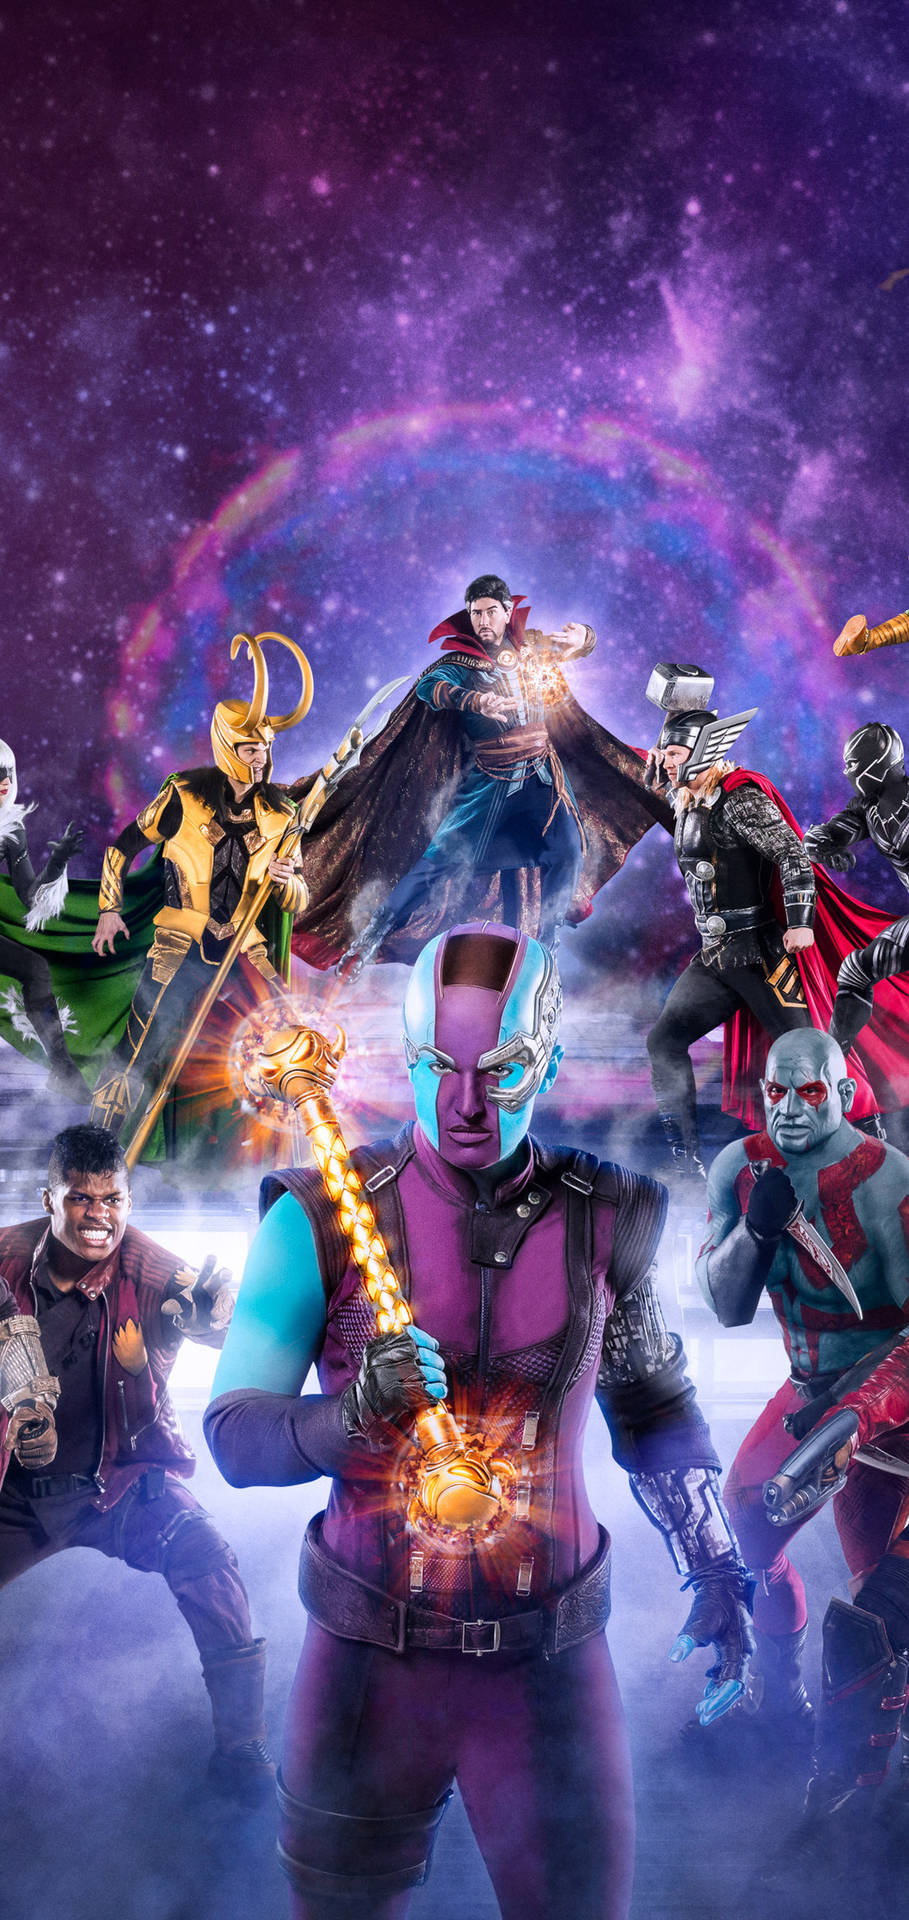 Avengersiphone X Violetter Weltraum-galaxie Wallpaper